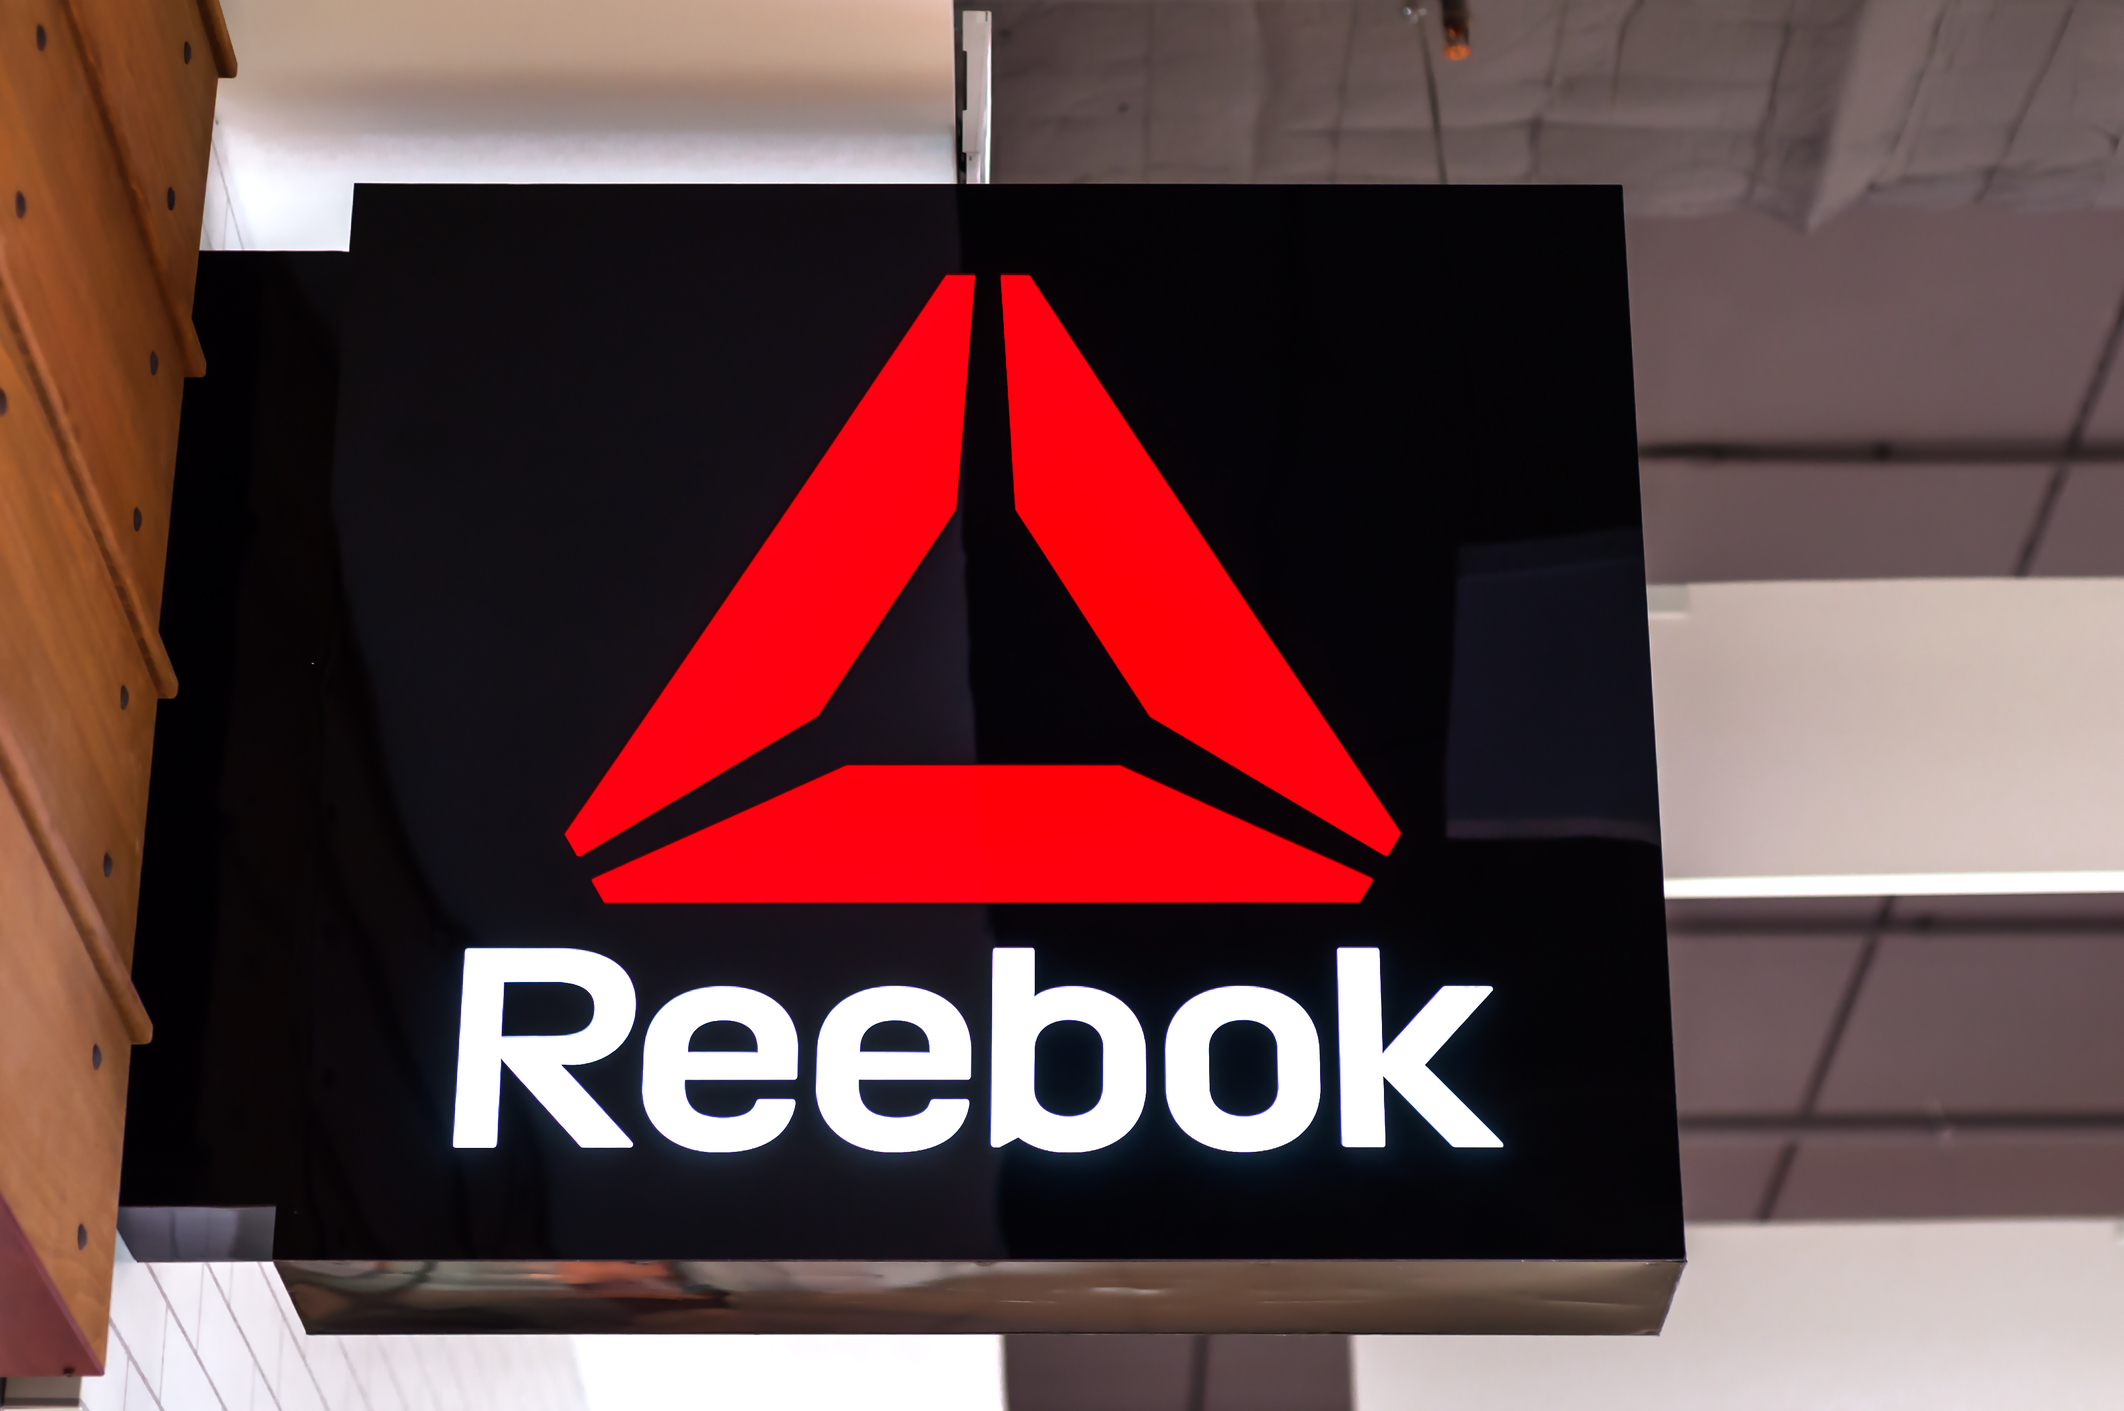 Reebok promo code: Take up to 60% off 